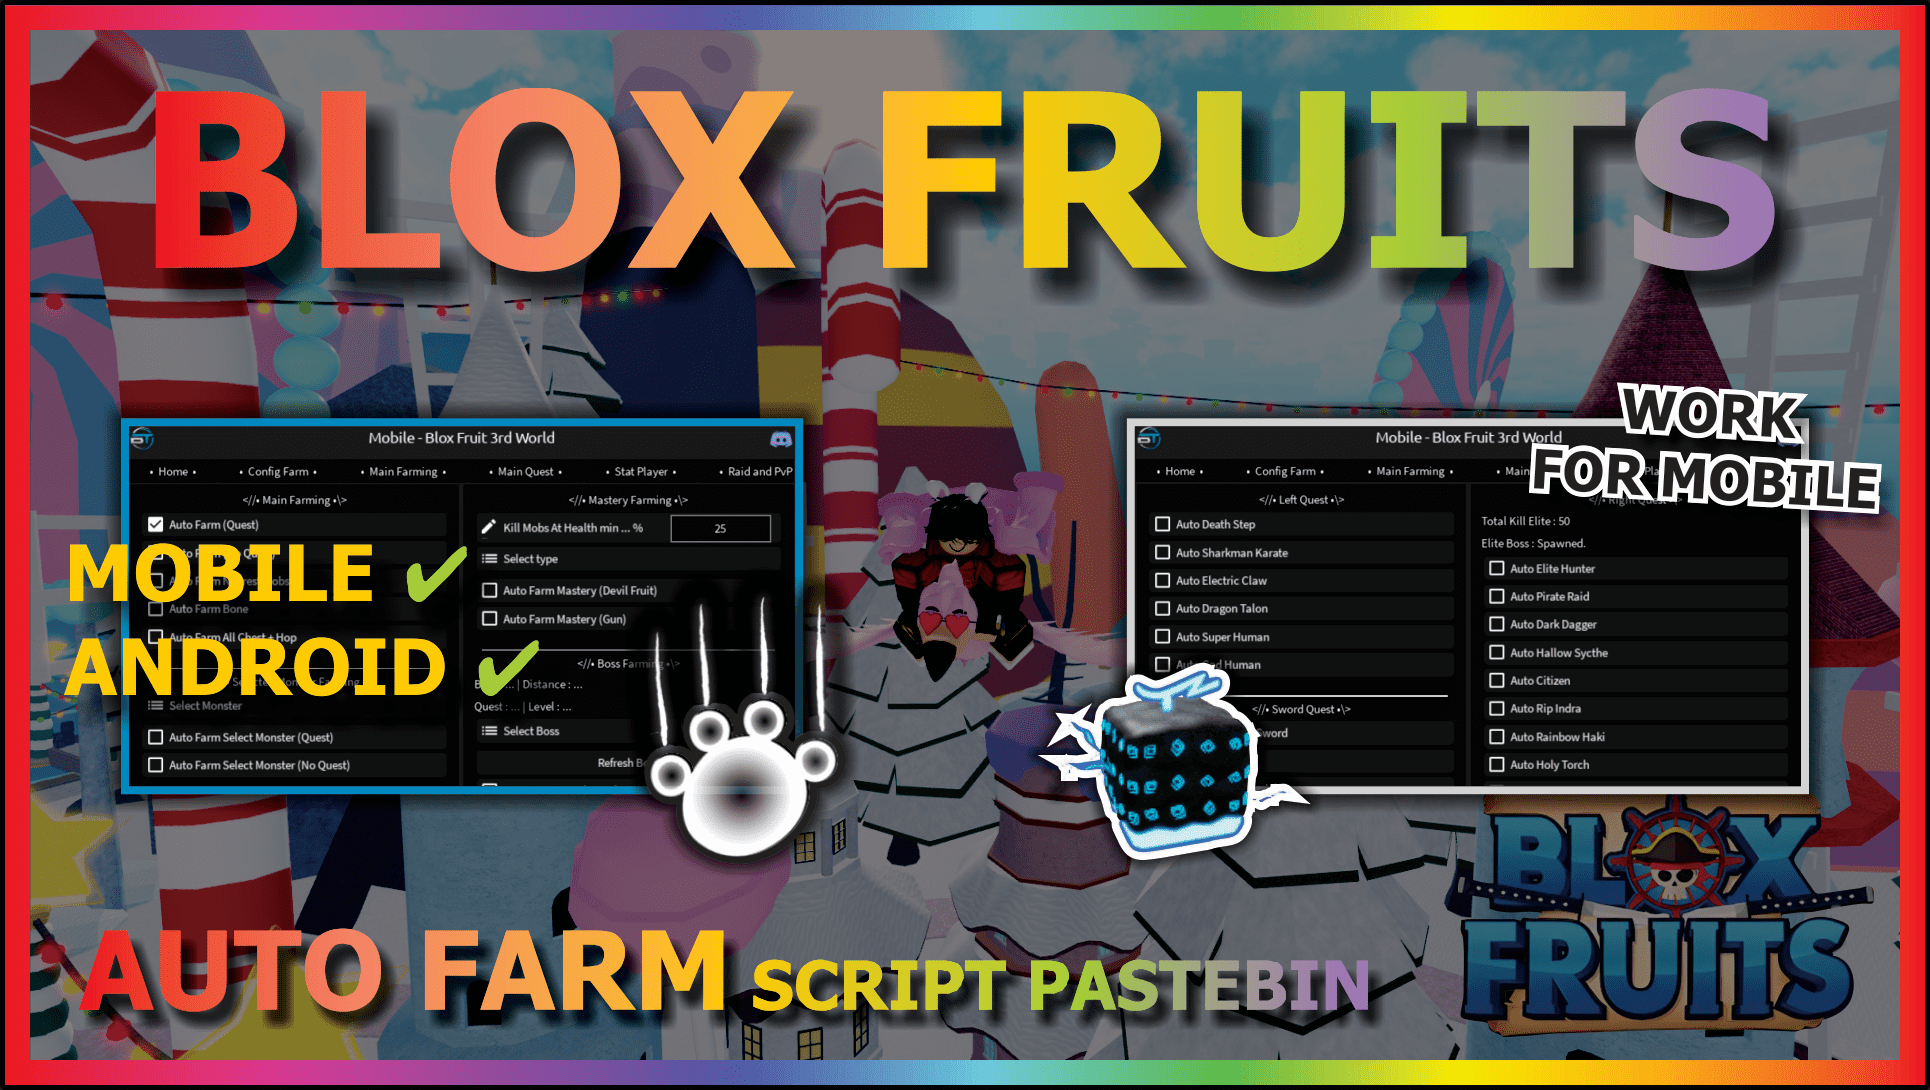 Blox Fruits Script BT Project (Mobile) - Auto Farm, Auto Quest